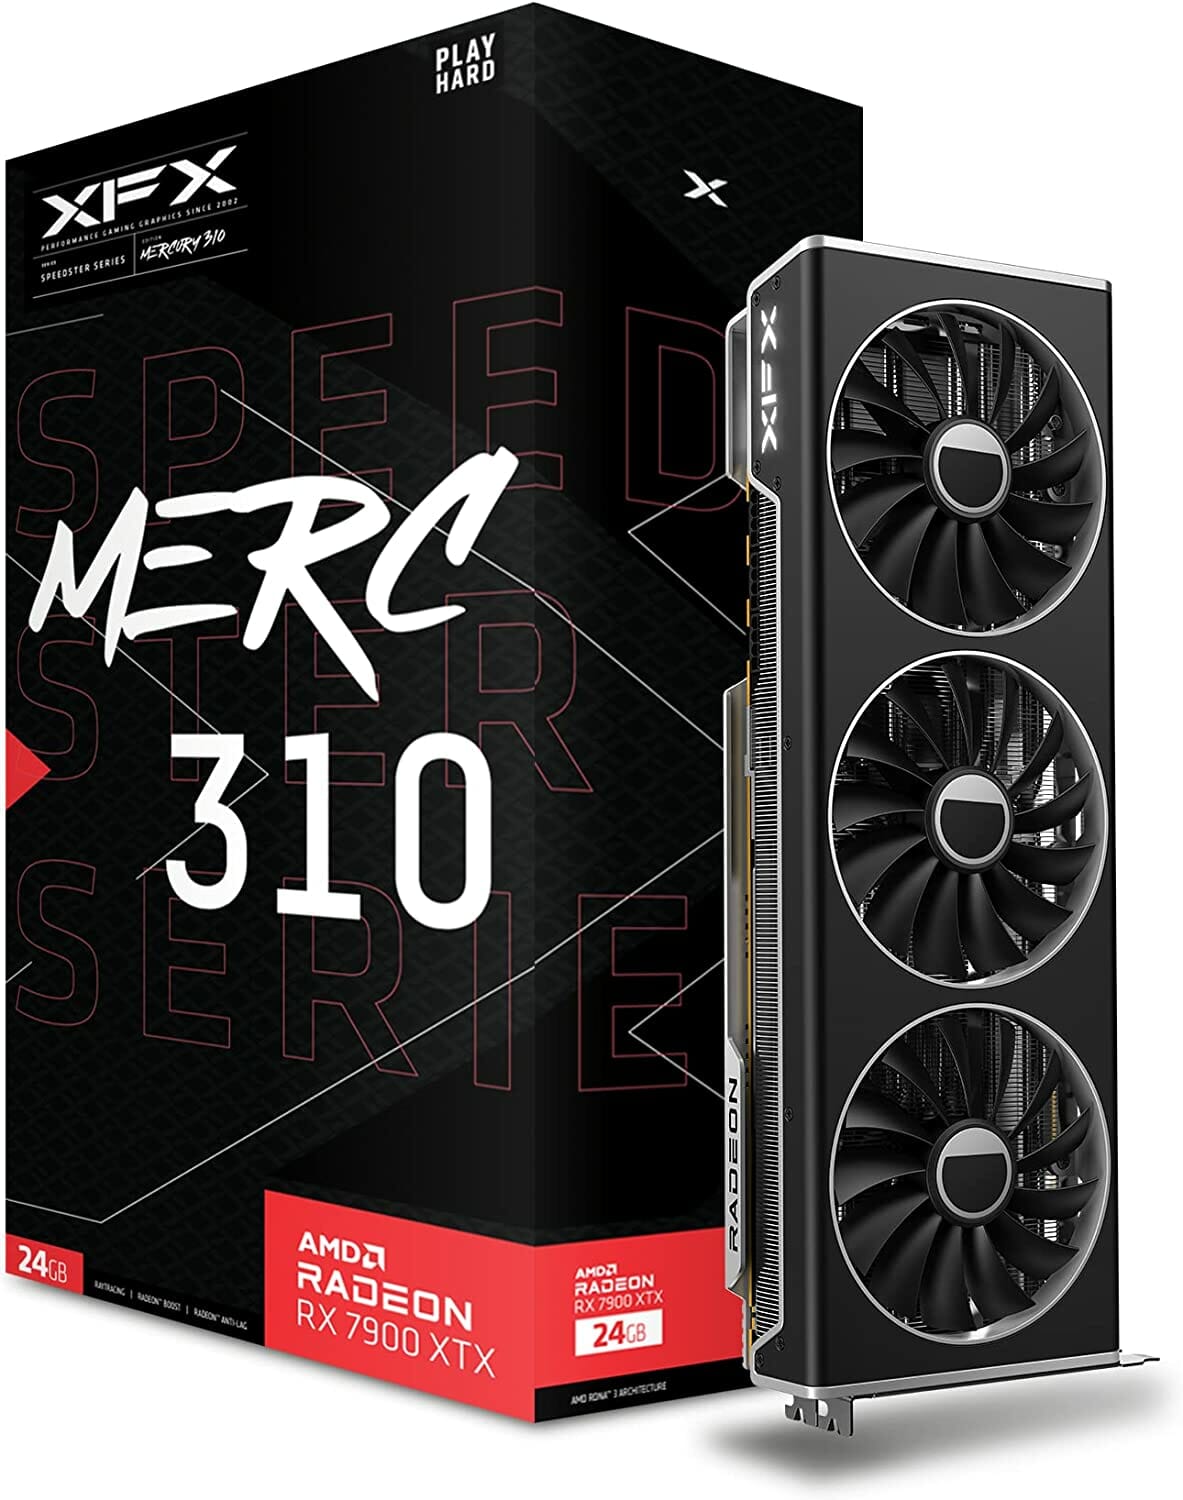 XFX Speedster MERC310 AMD Radeon